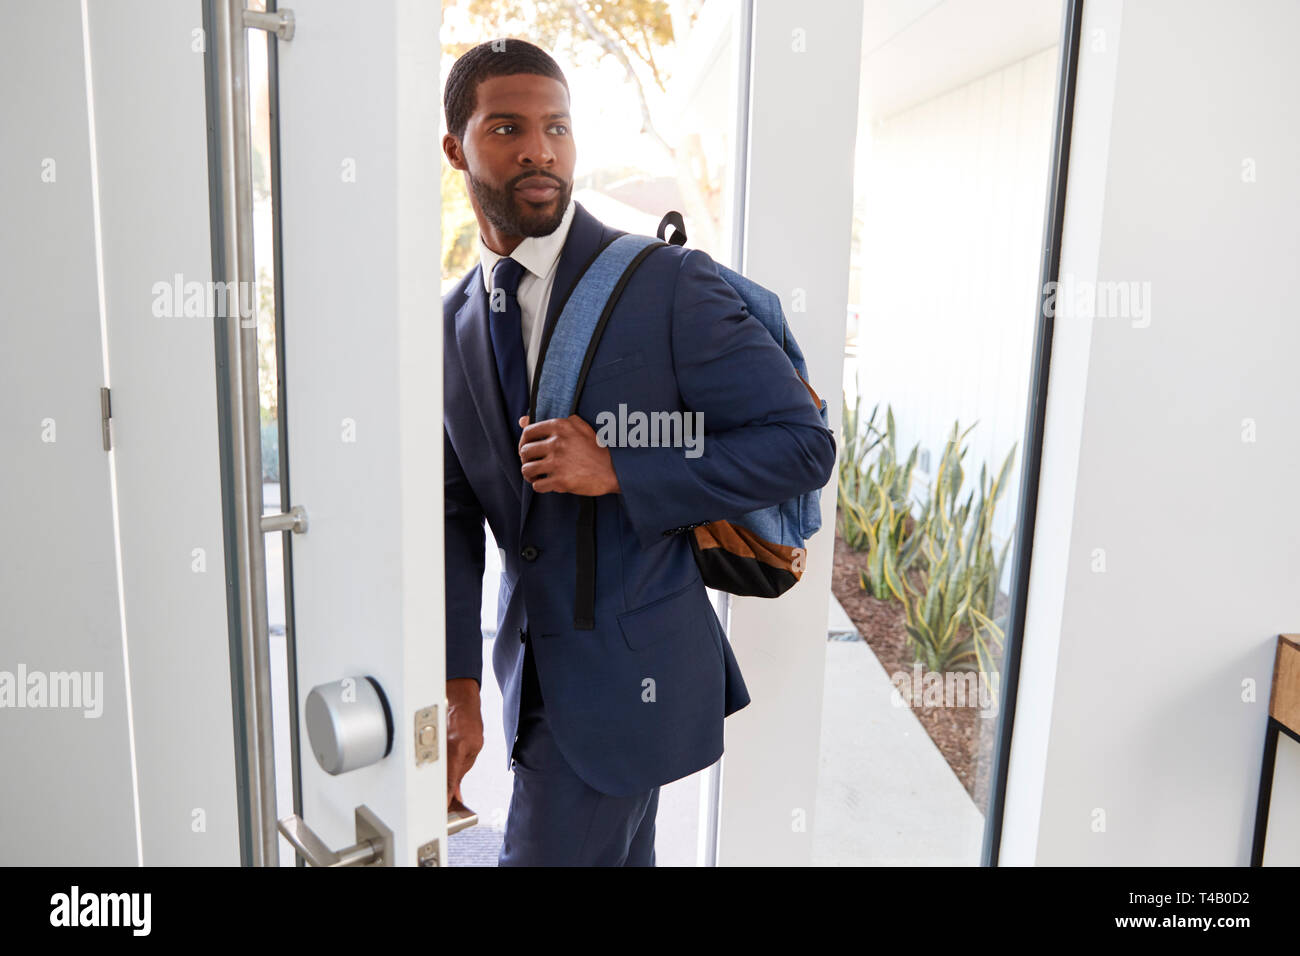 Businessman Wearing suit l'ouverture de la porte de quitter la maison pour travailler Banque D'Images